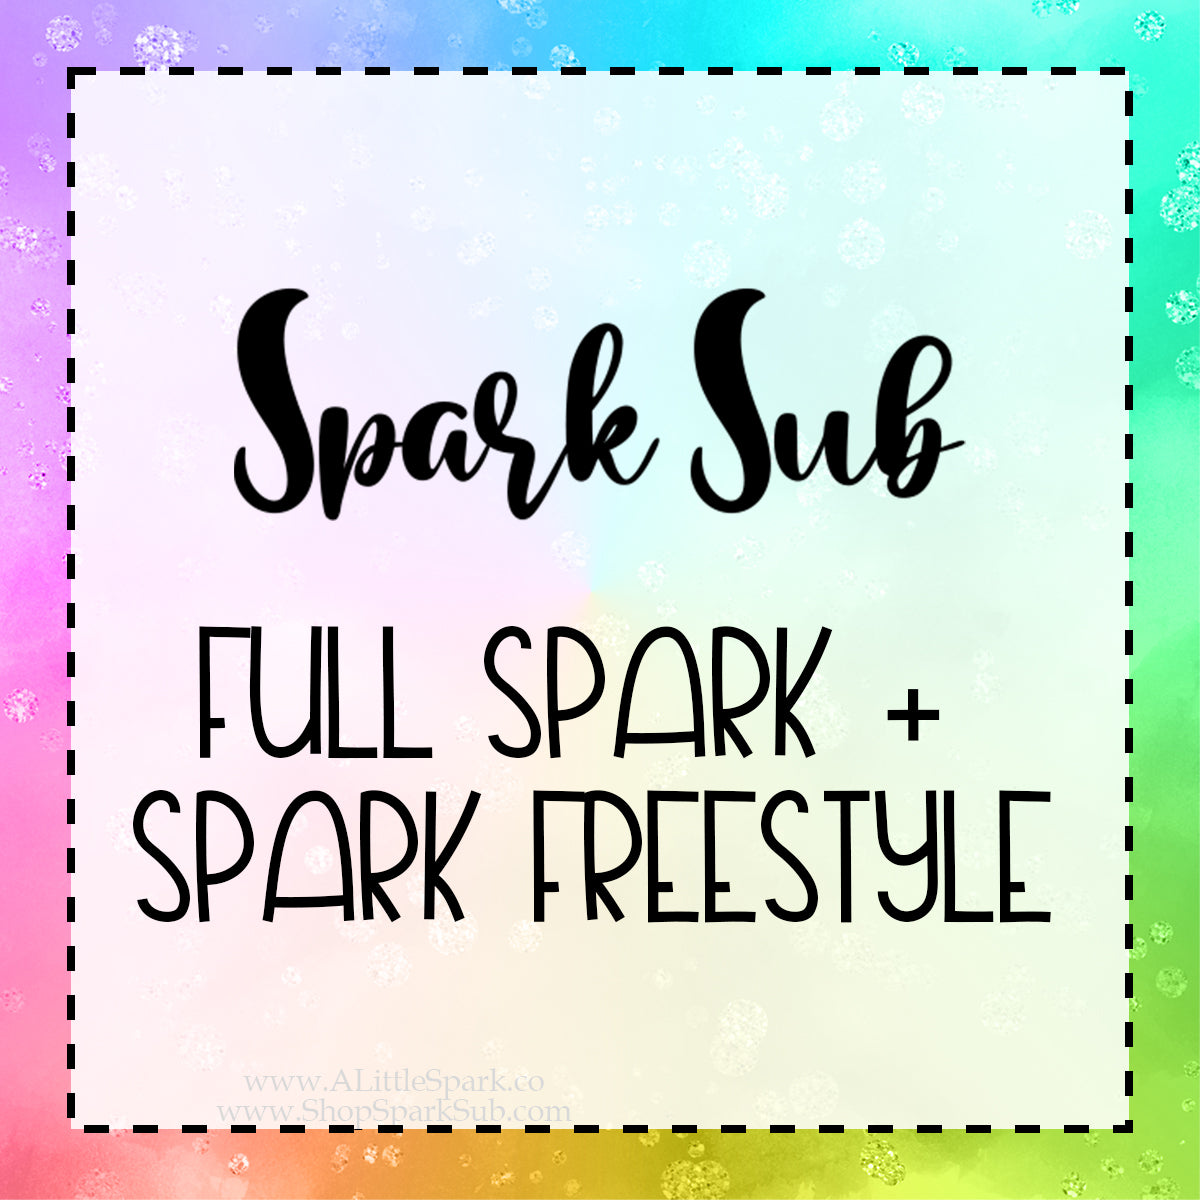 Full Spark + Freestyle